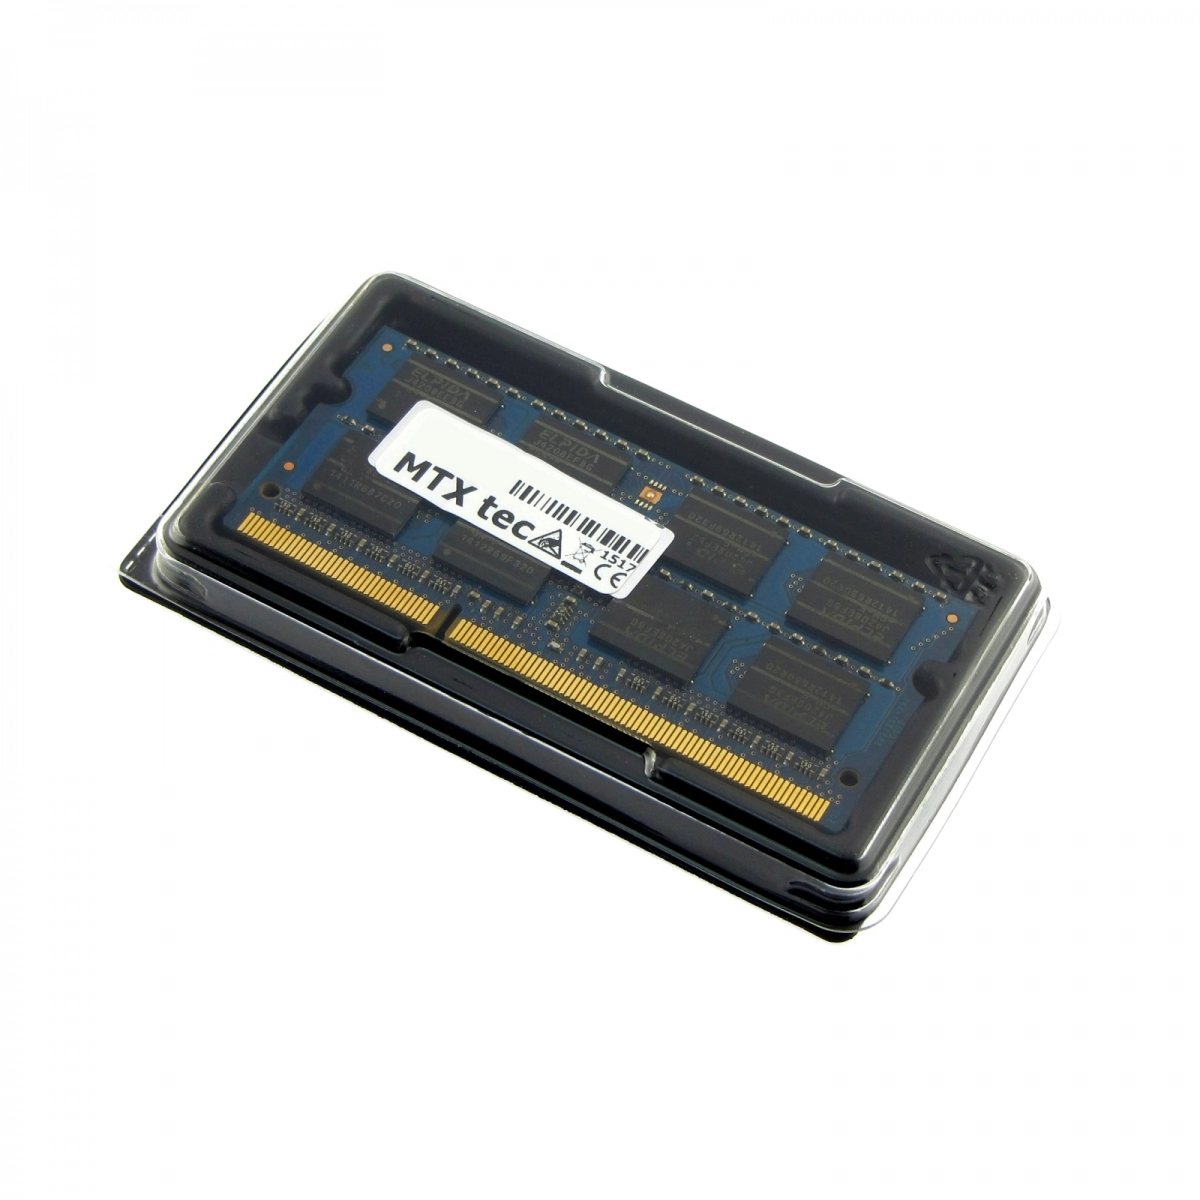 MTXtec Arbeitsspeicher 8 GB RAM für ASUS F75A